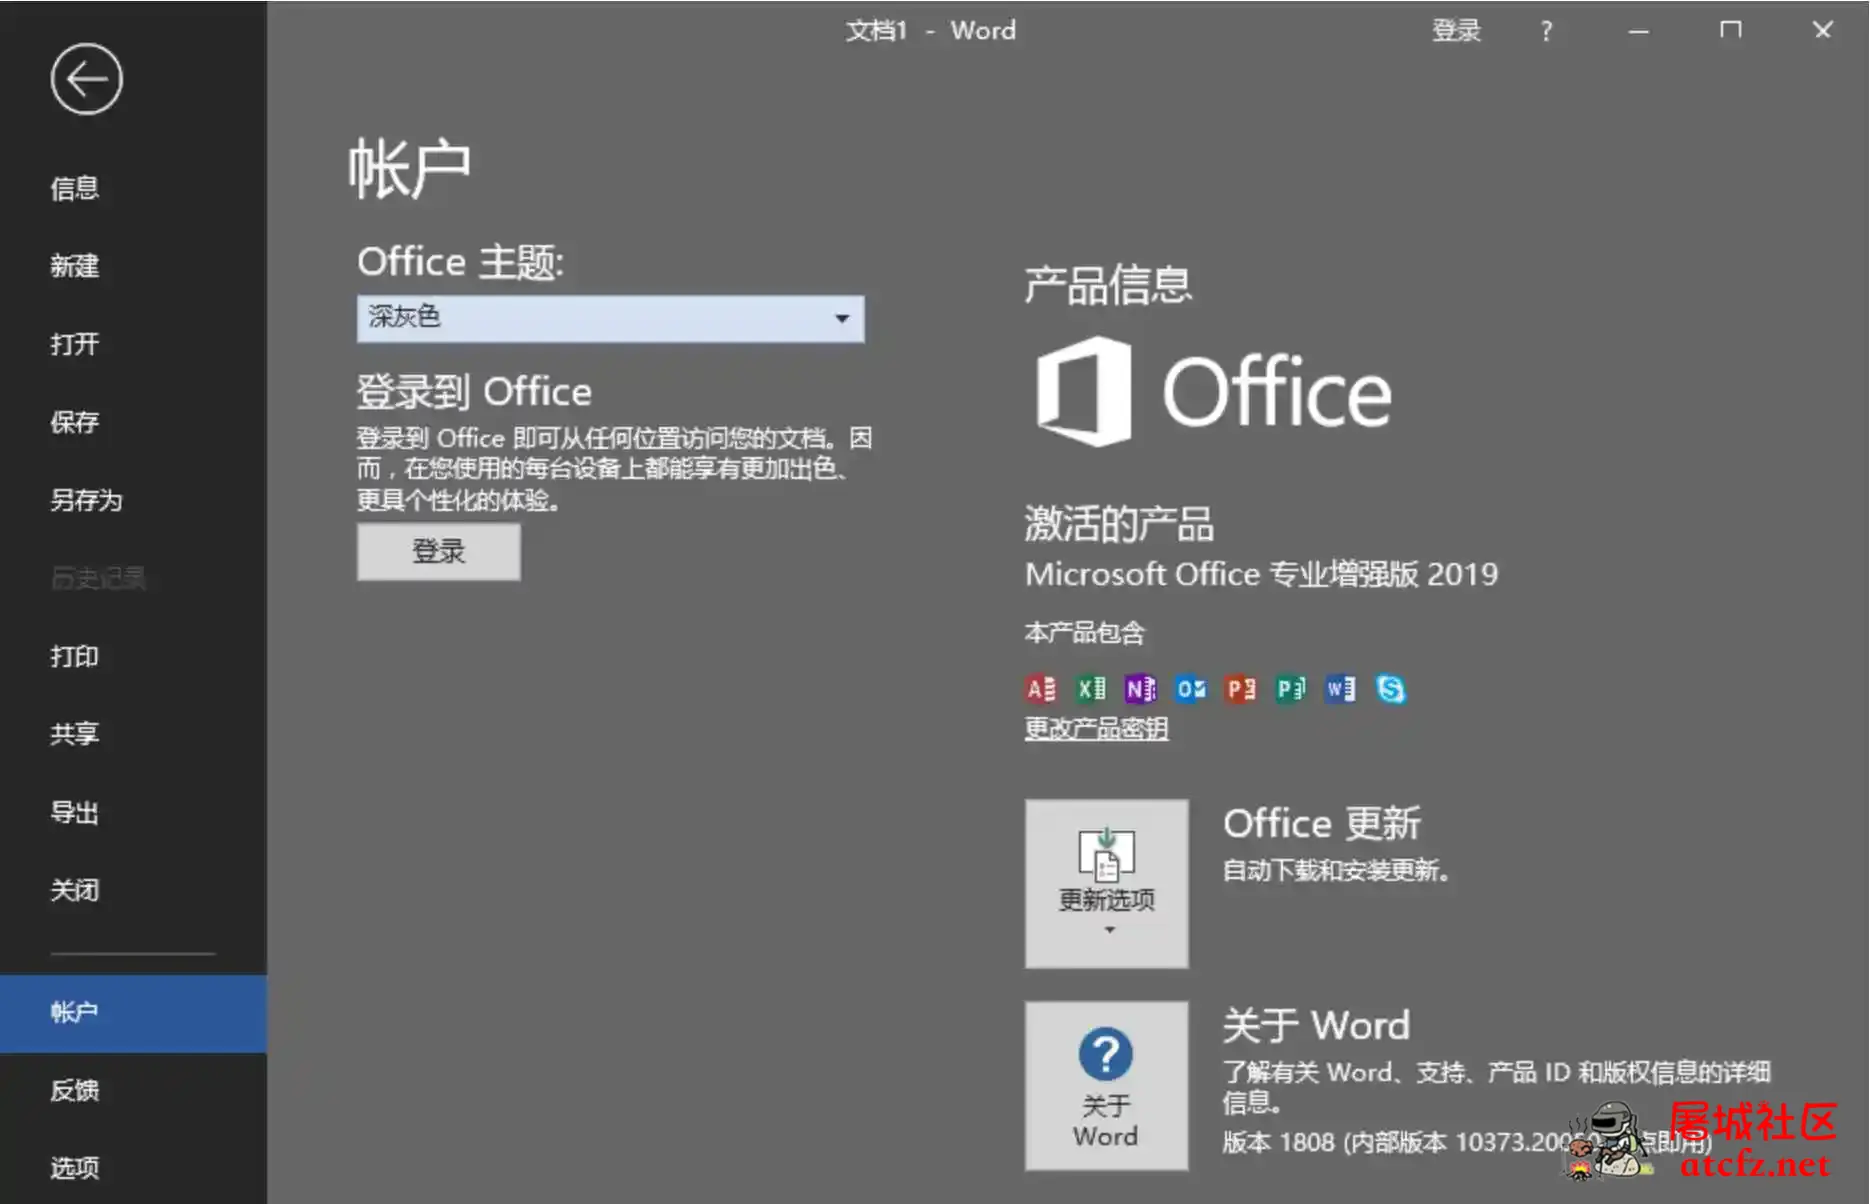 微软Office2019批量授权版批量授权商业版工具 屠城辅助网www.tcfz1.com7218